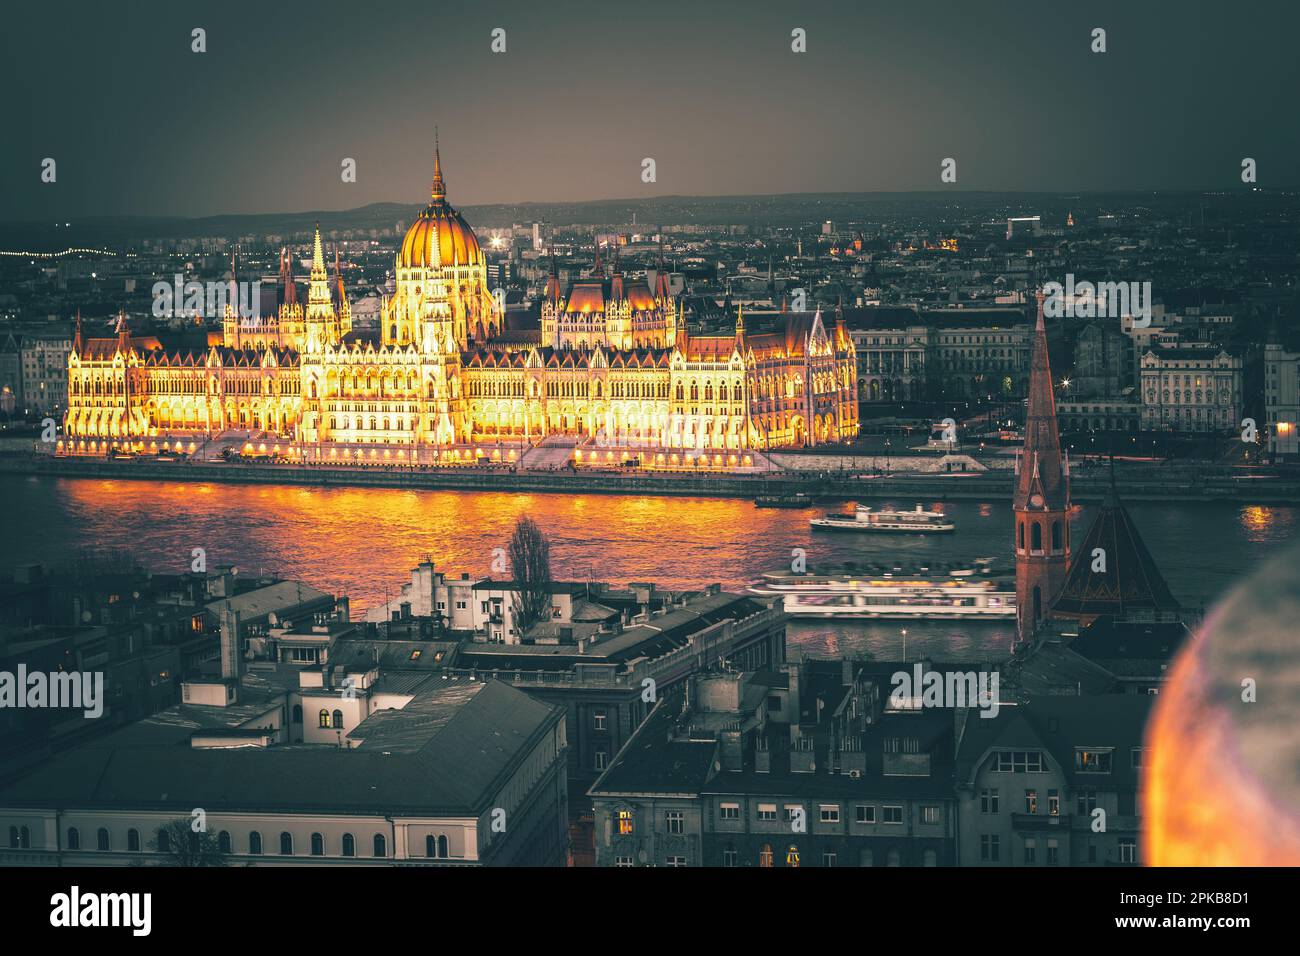 Das Parlament in Budapest, Ungarn, herrliches historisches Gebäude bei Nacht, direkt an der Donau Stockfoto